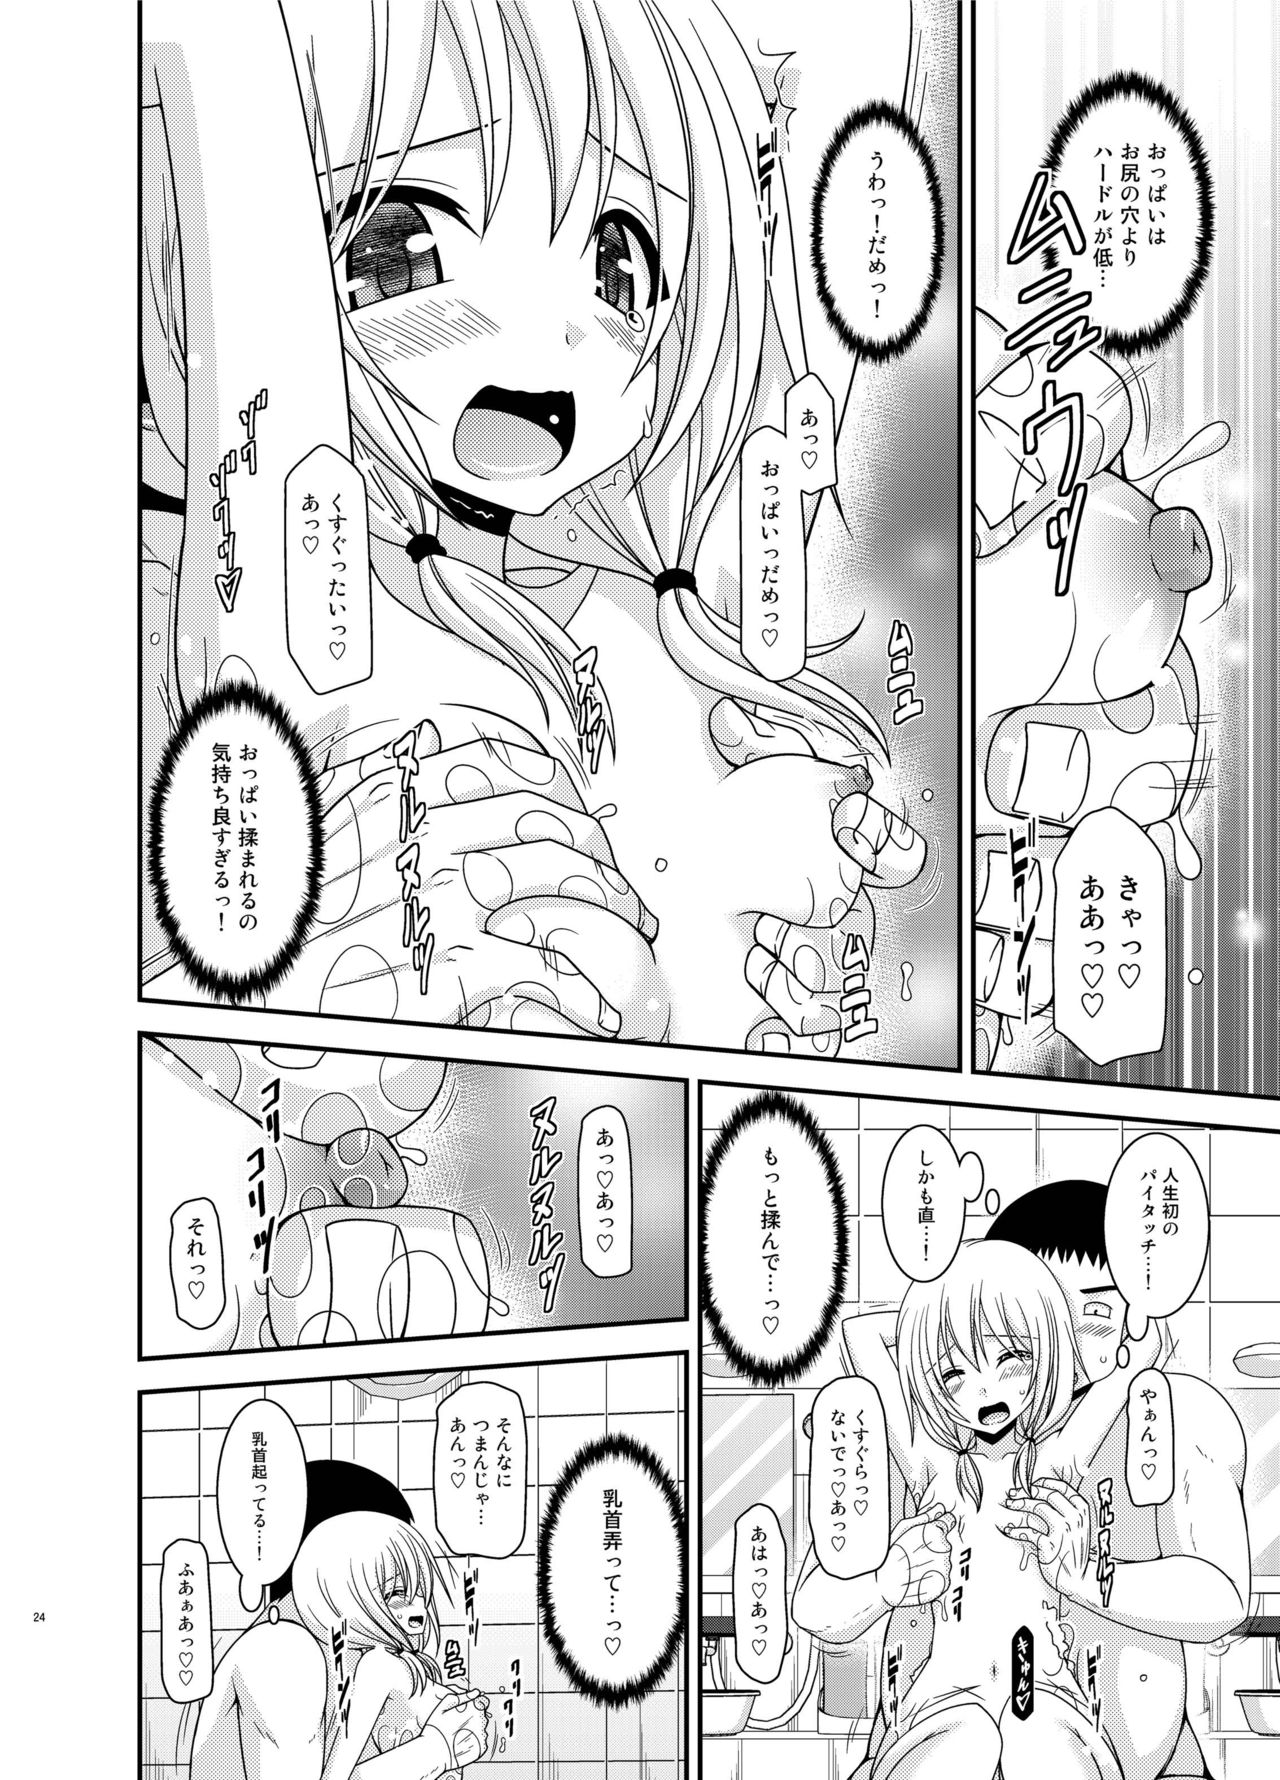 [valssu (Charu)] Roshutsu Shoujo Nikki 18 Satsume [Digital] page 24 full